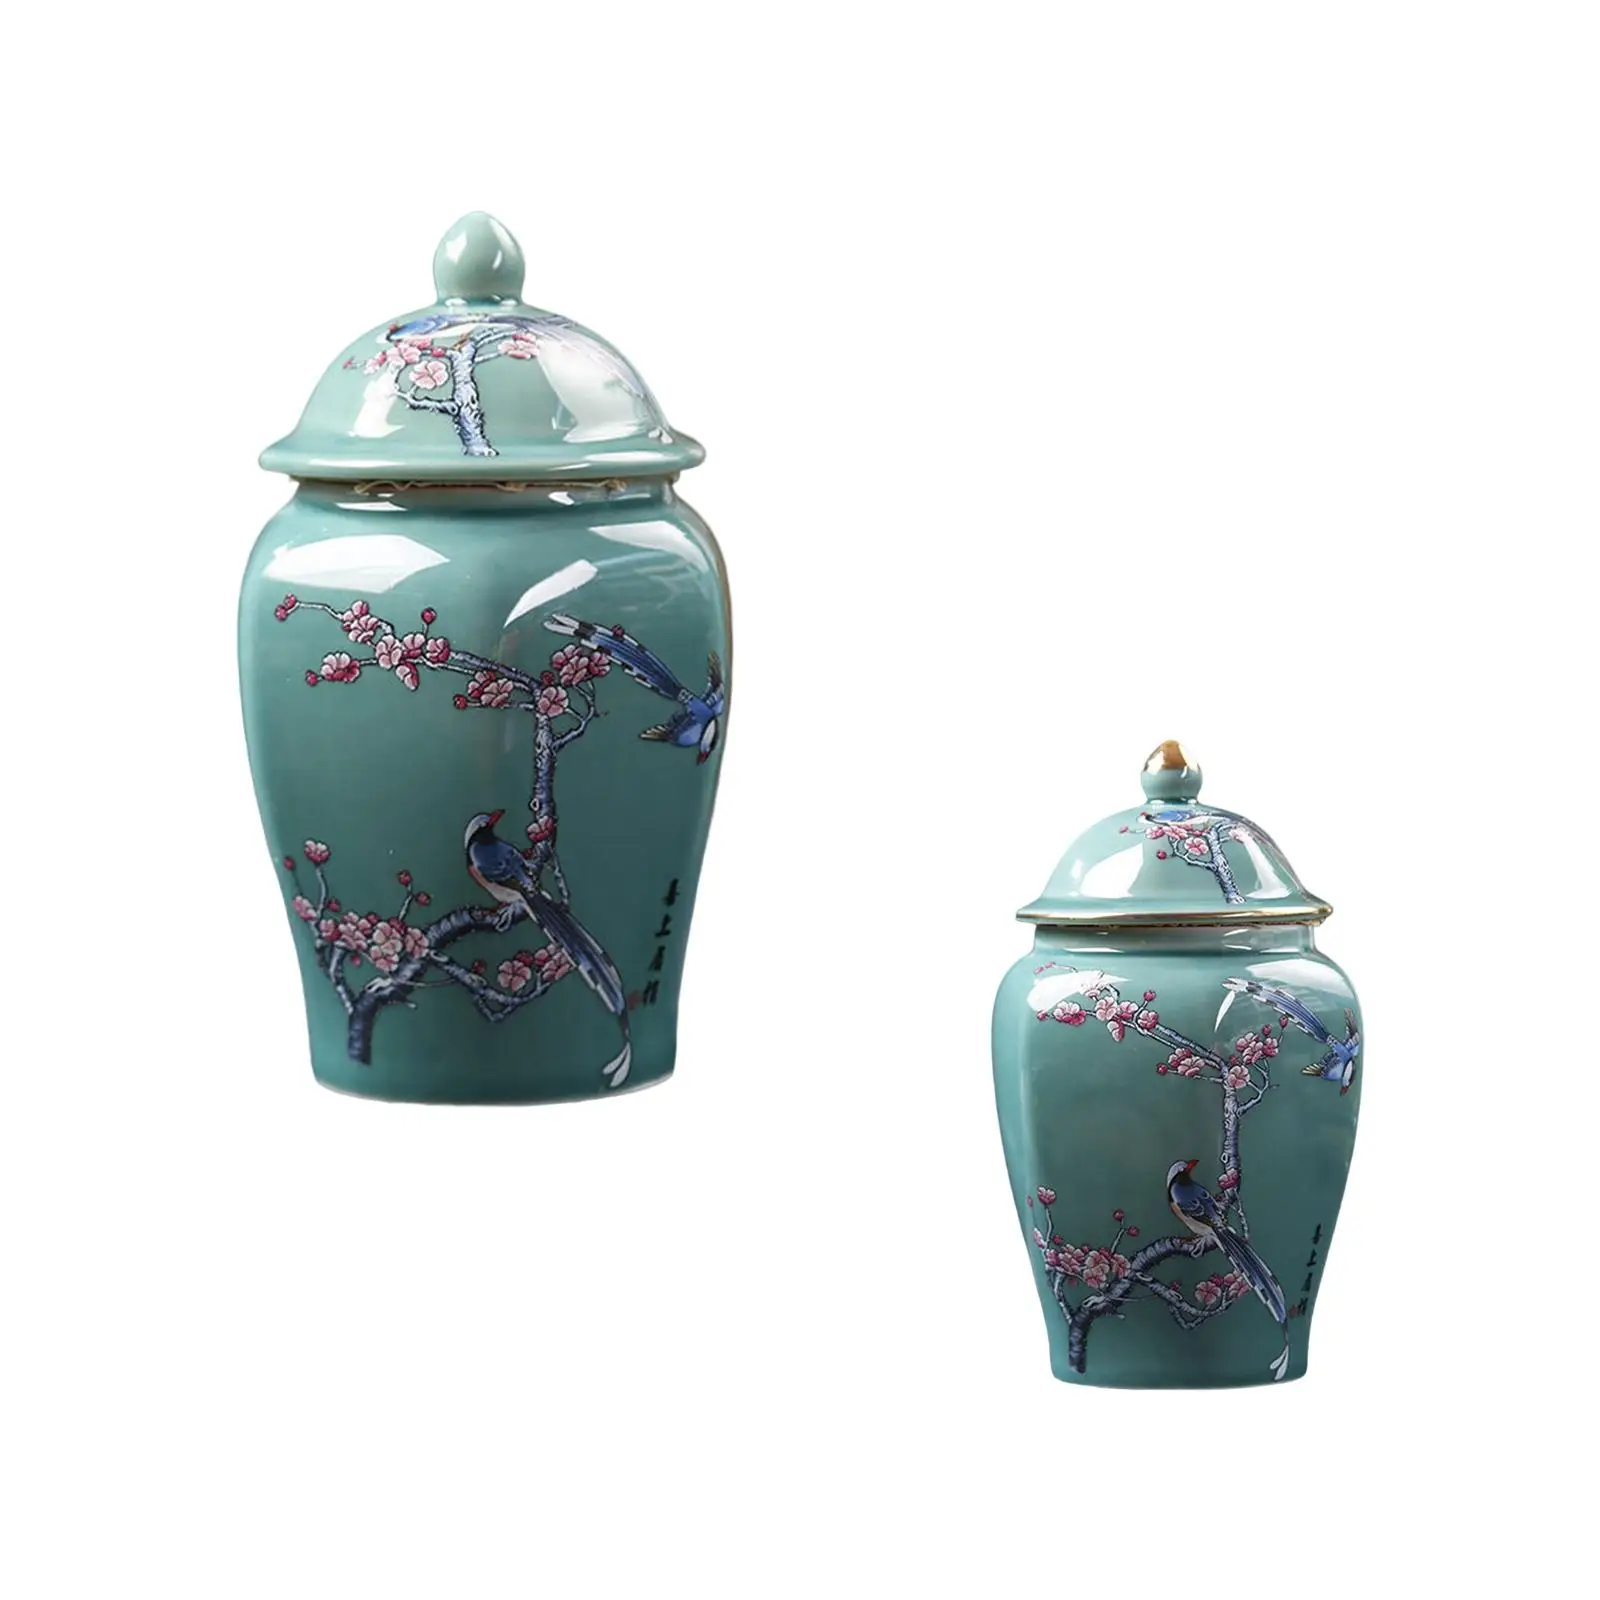 Ceramic Ginger Jar Tea Canister Flowerpot Oriental Ornament Handicraft Gift Holder Flower Vase for Wedding Countertop Home Decor